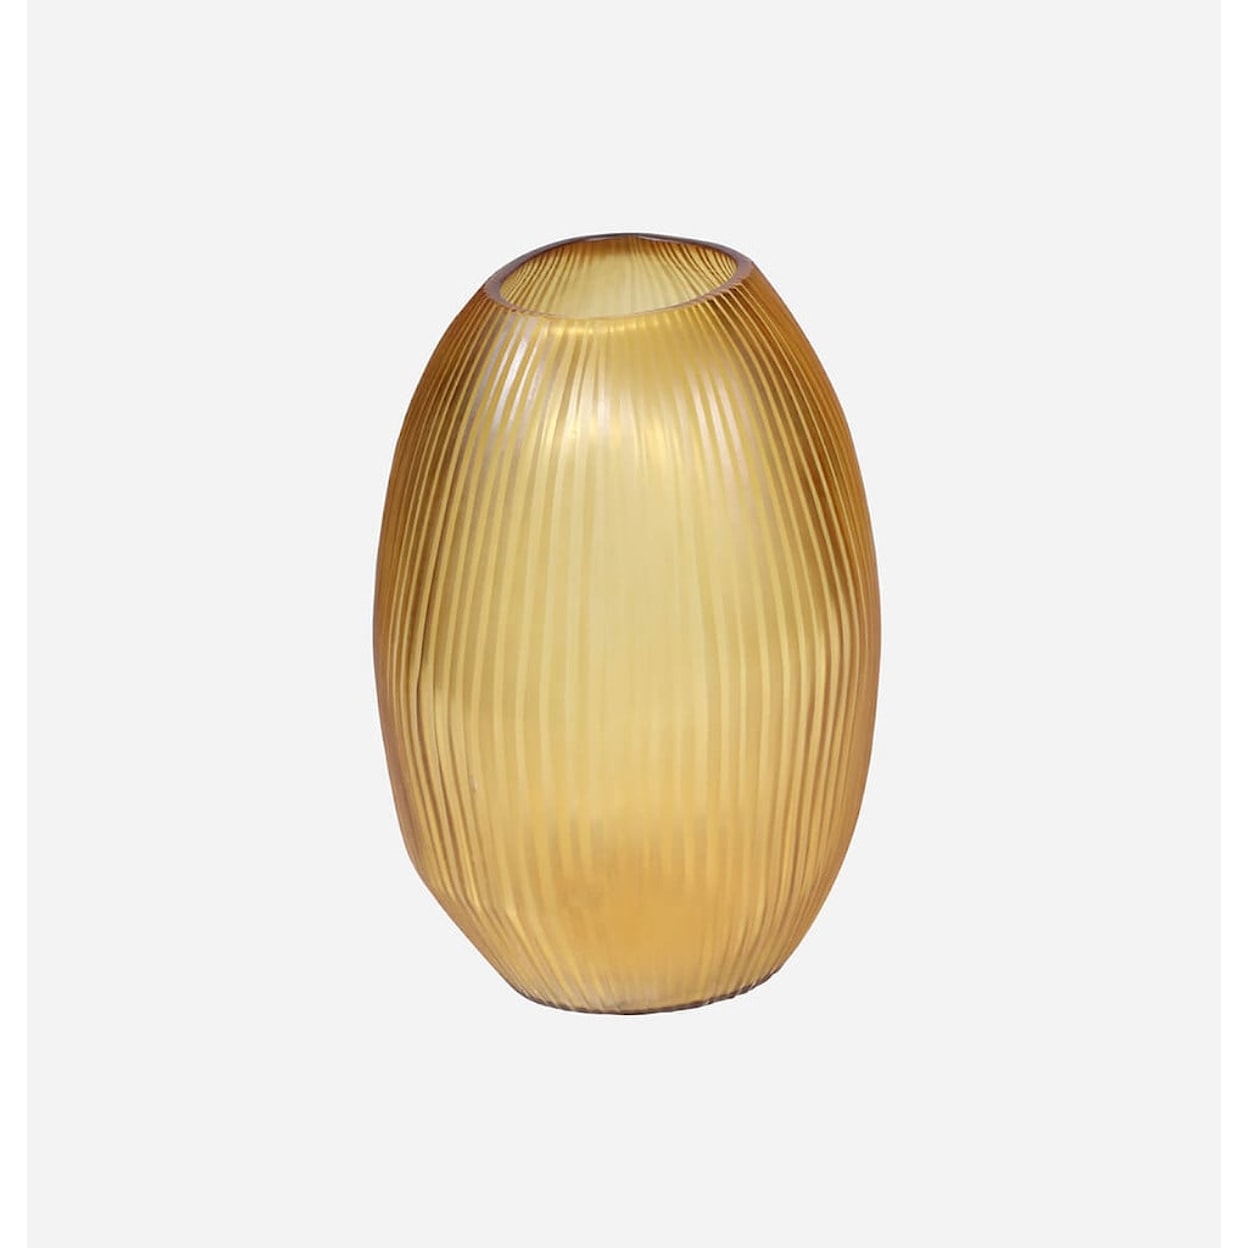 BOBO Intriguing Objects BOBO Intriguing Objects Seine Gold Sculptural Glass Vase - Large